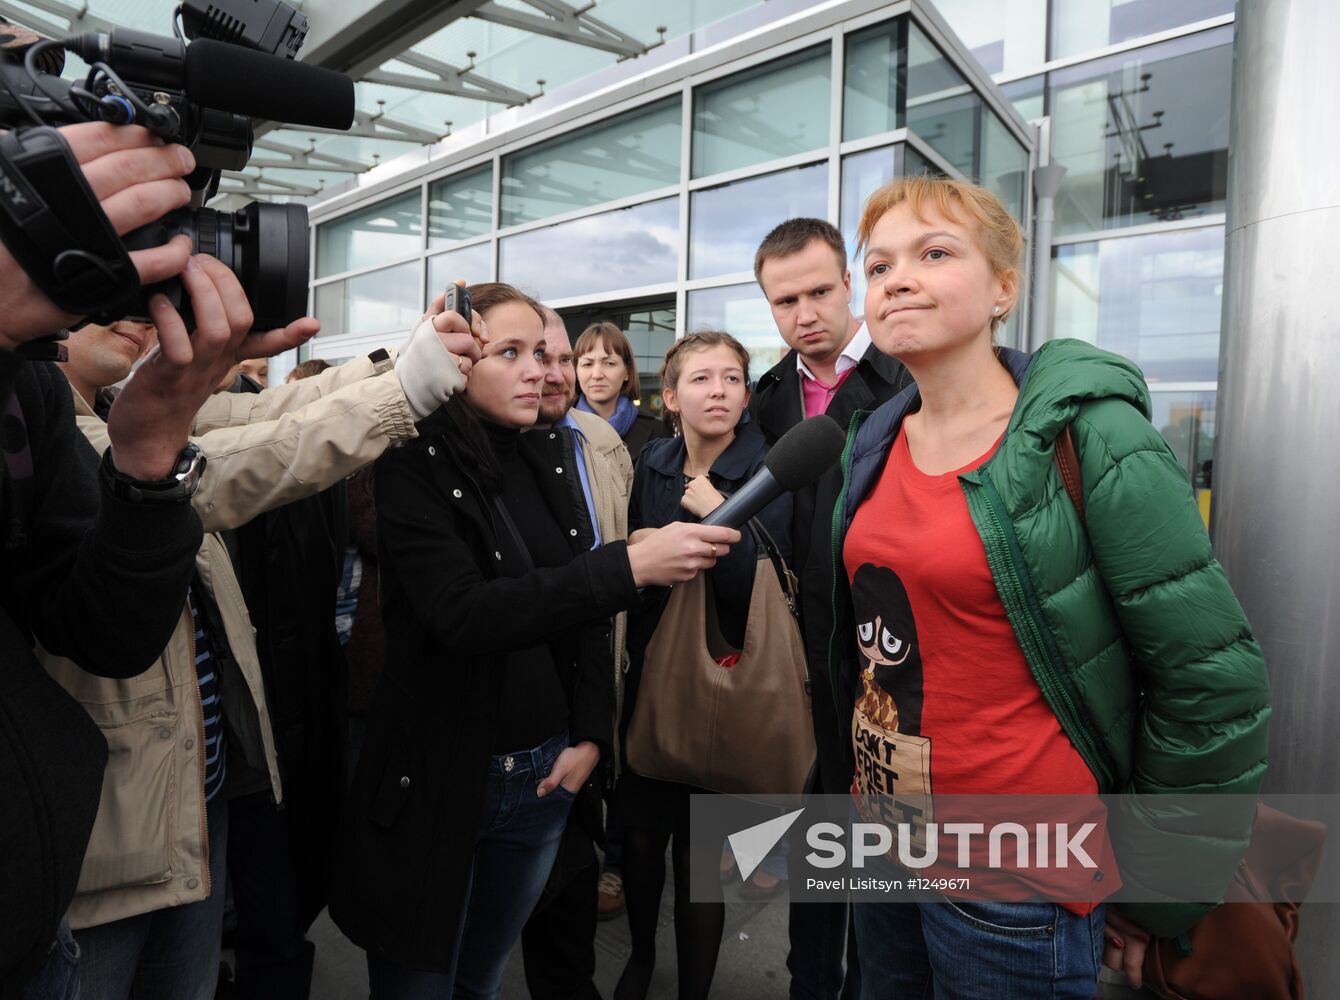 Ura.ru editor in chief Oksana Panova arrives in Yekaterinburg